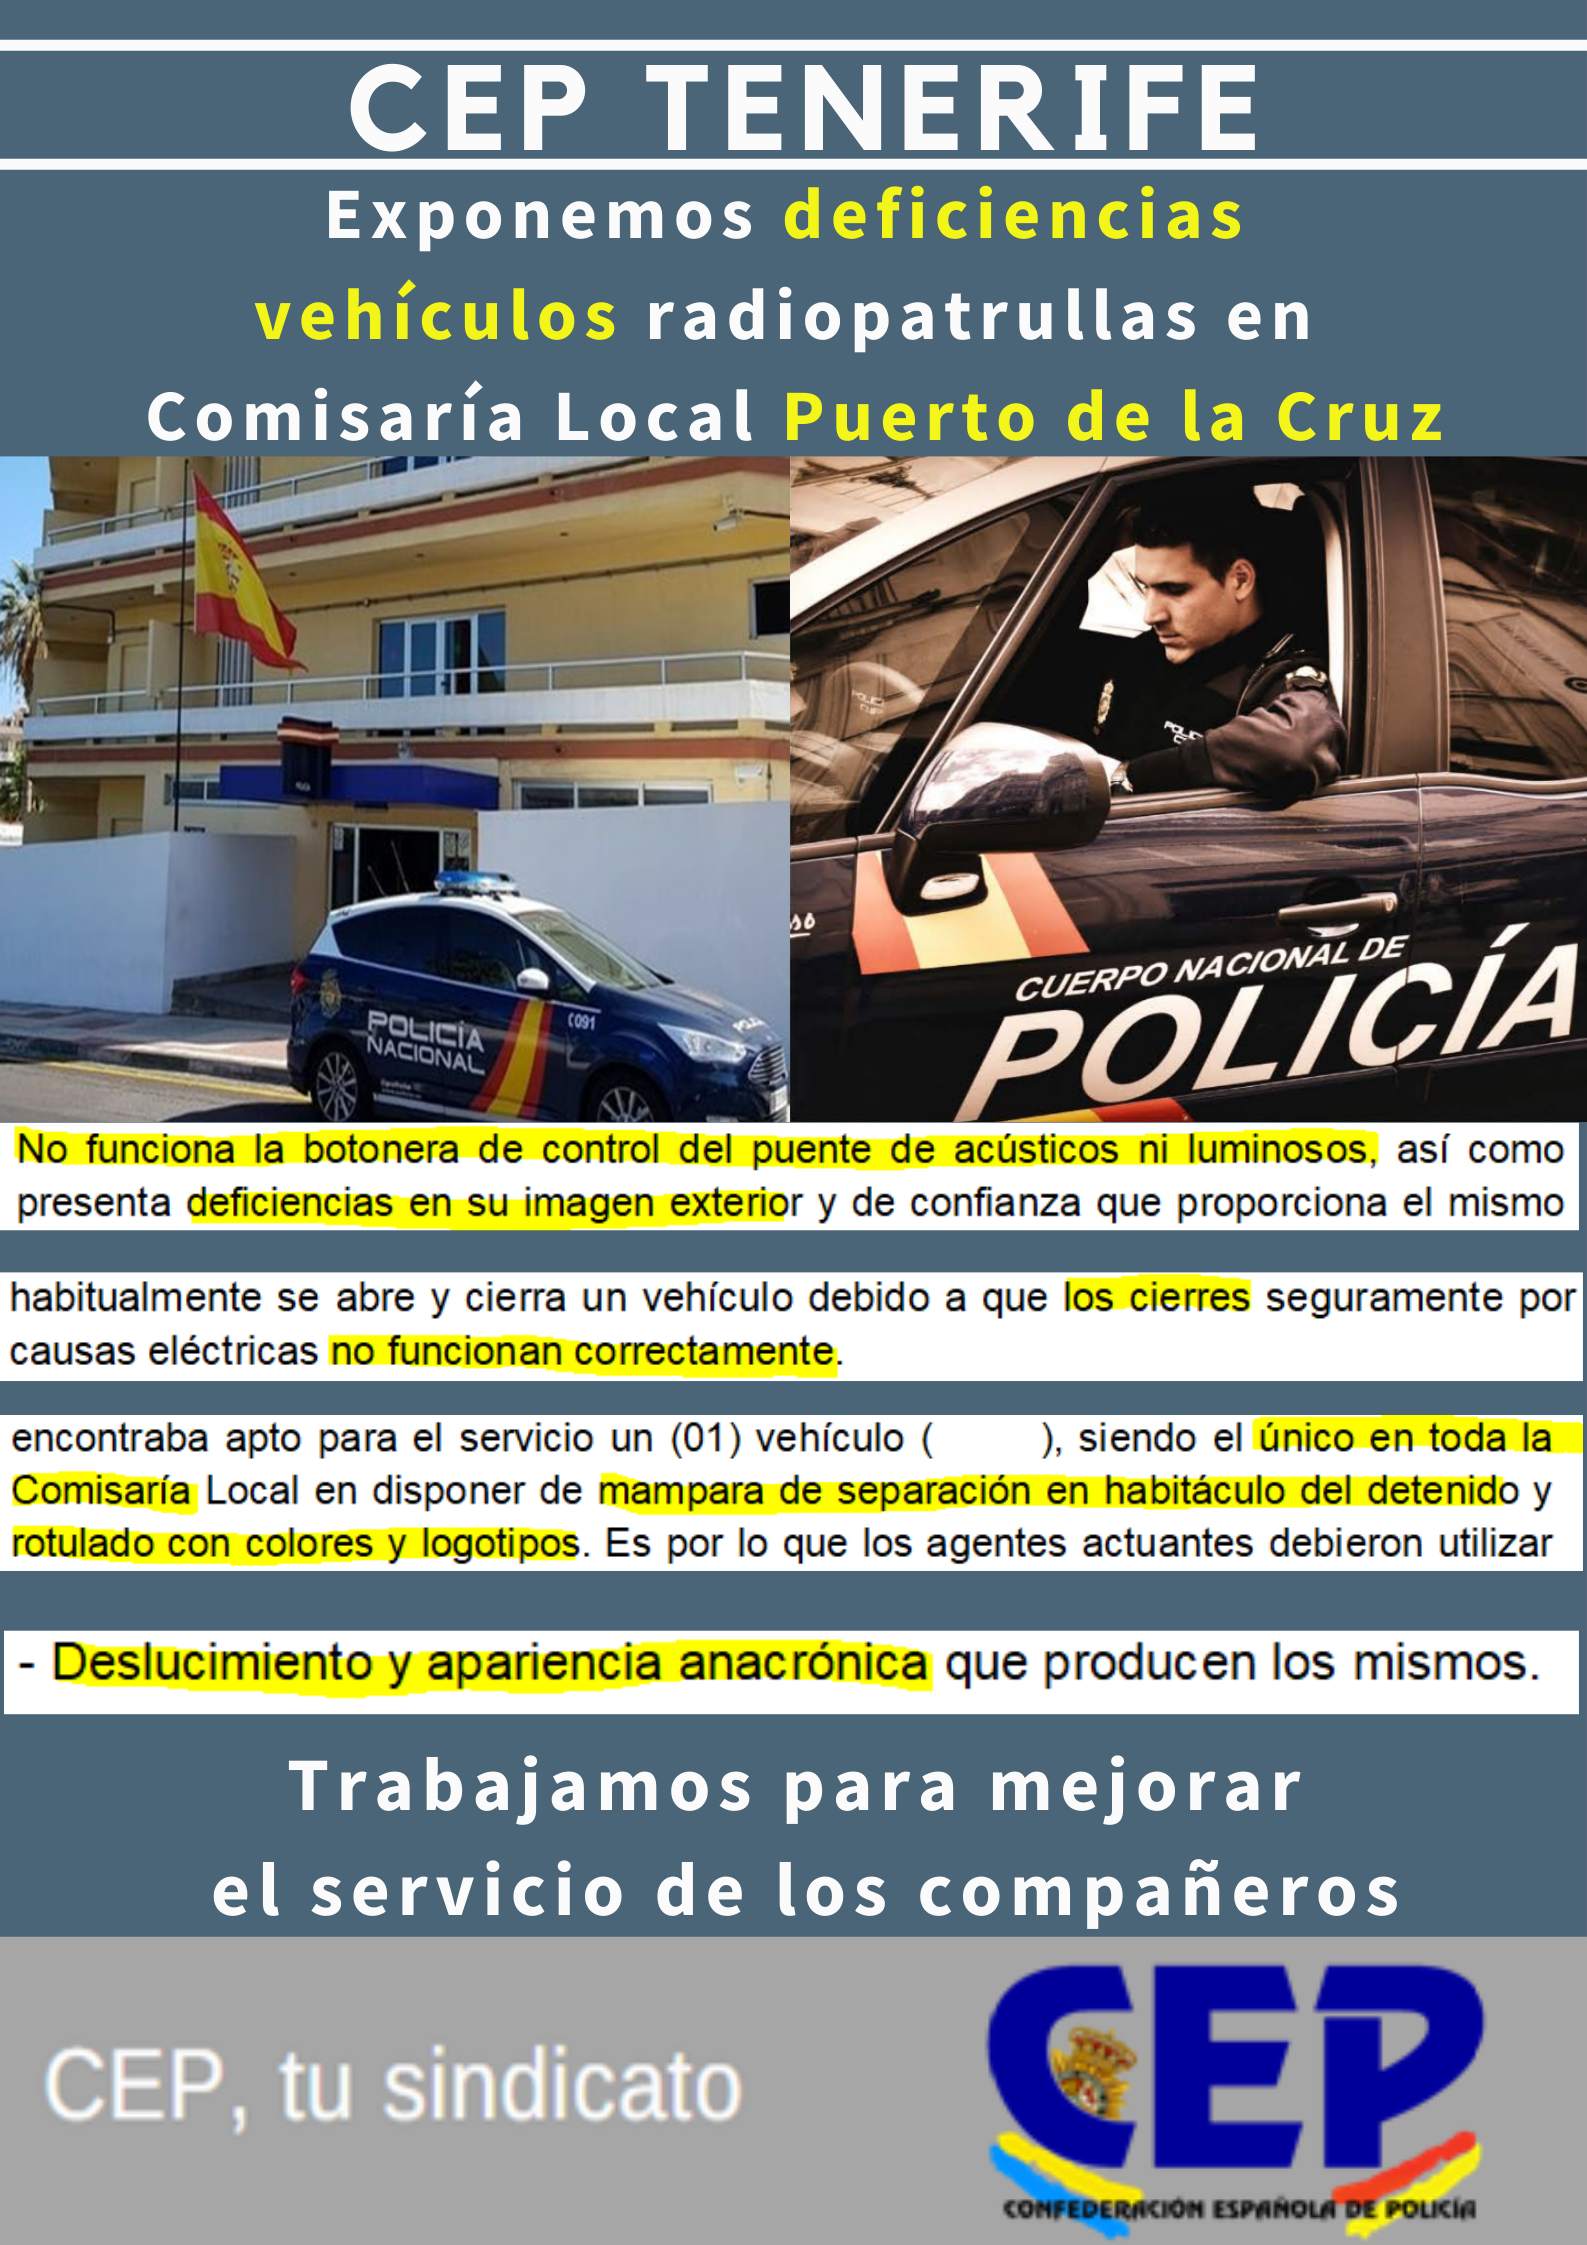 Exponemos deficiencias vehículos radiopatrullas en Comisaría Local Puerto de la Cruz